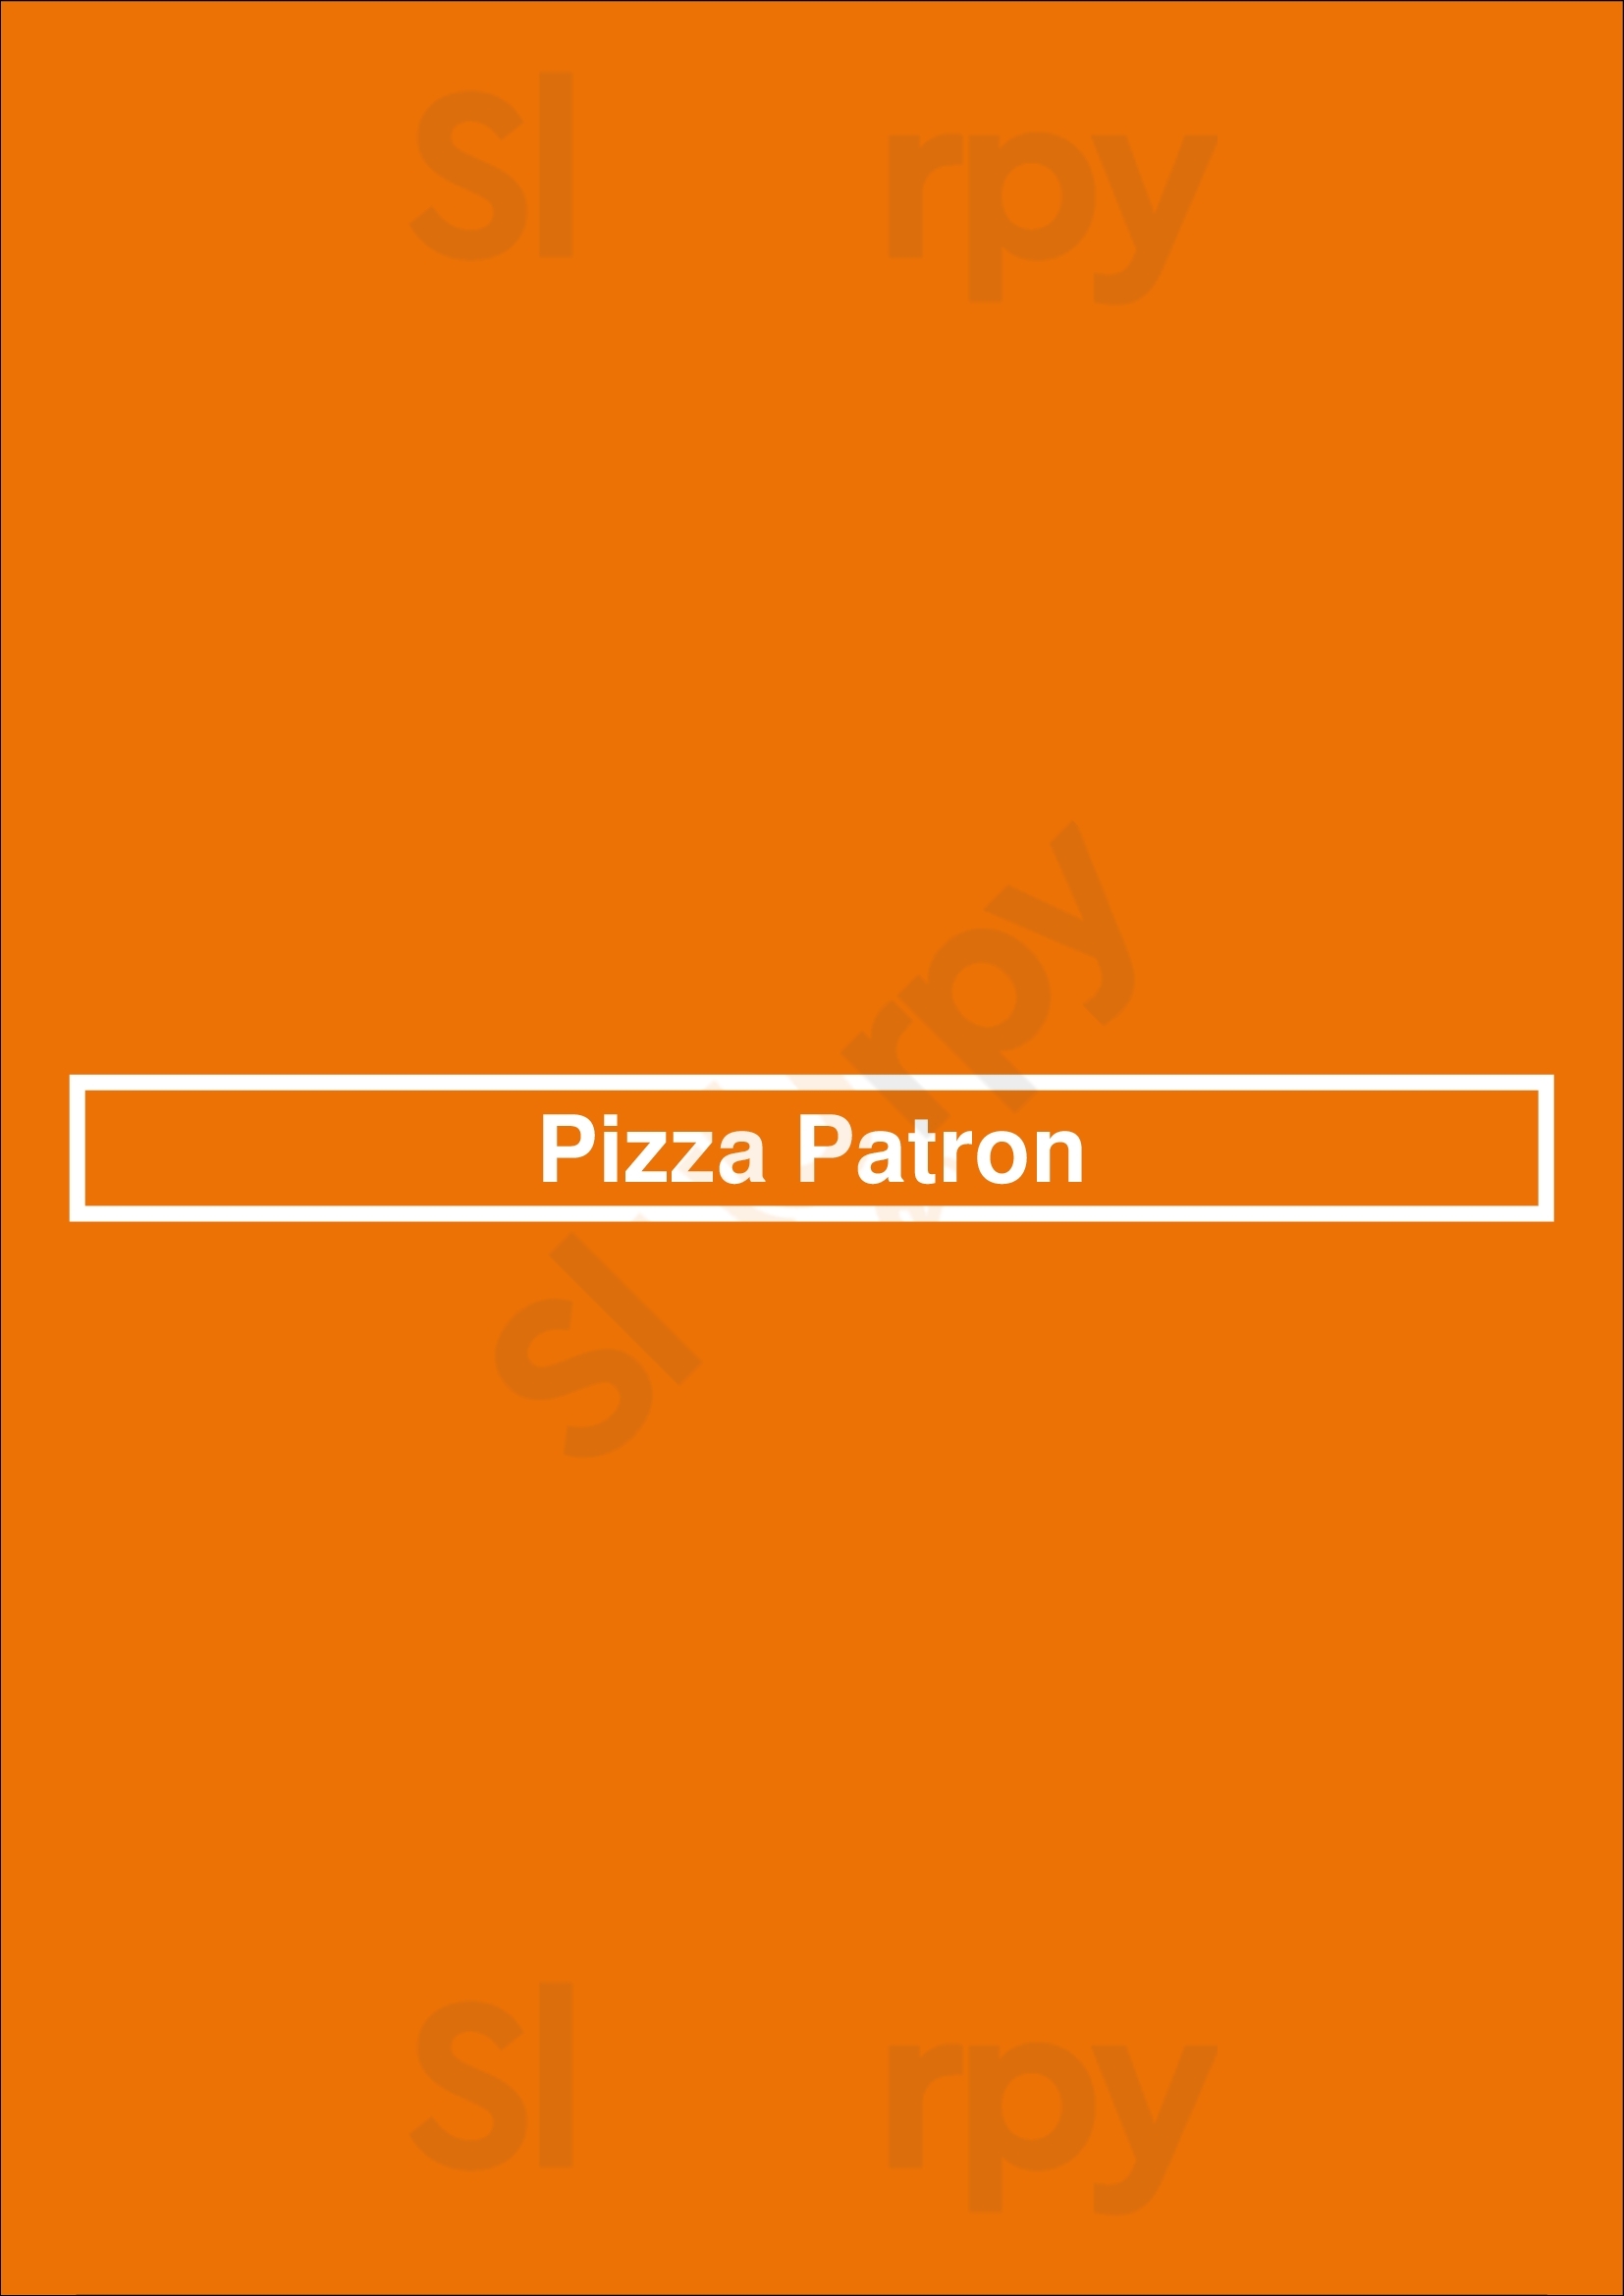 Pizza Patron Fort Worth Menu - 1